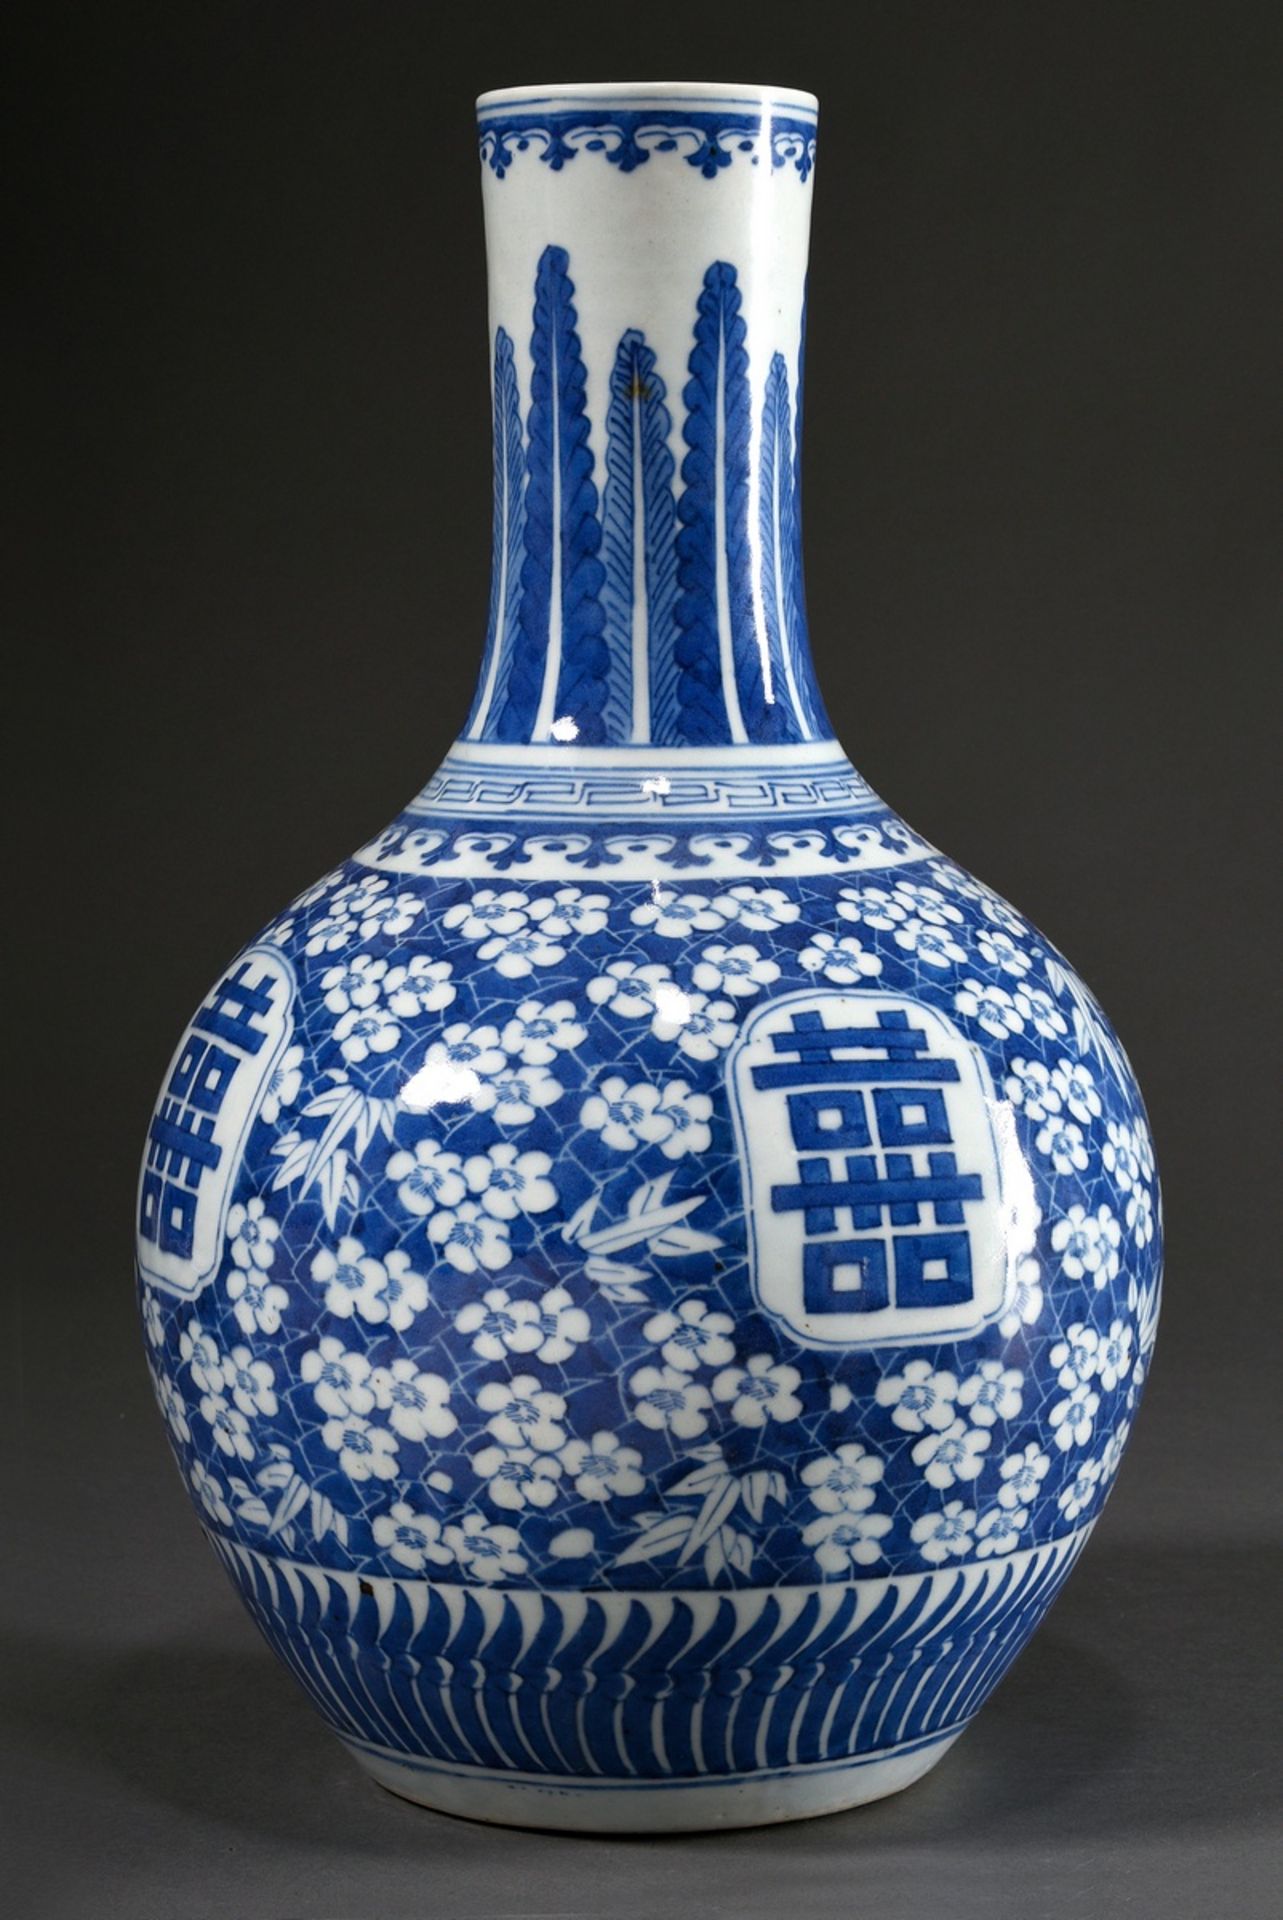 Chinesische Porzellan Tianqiuping Vase mit floralem Blaumalerei Dekor "Prunusblüten und Blattdekor"